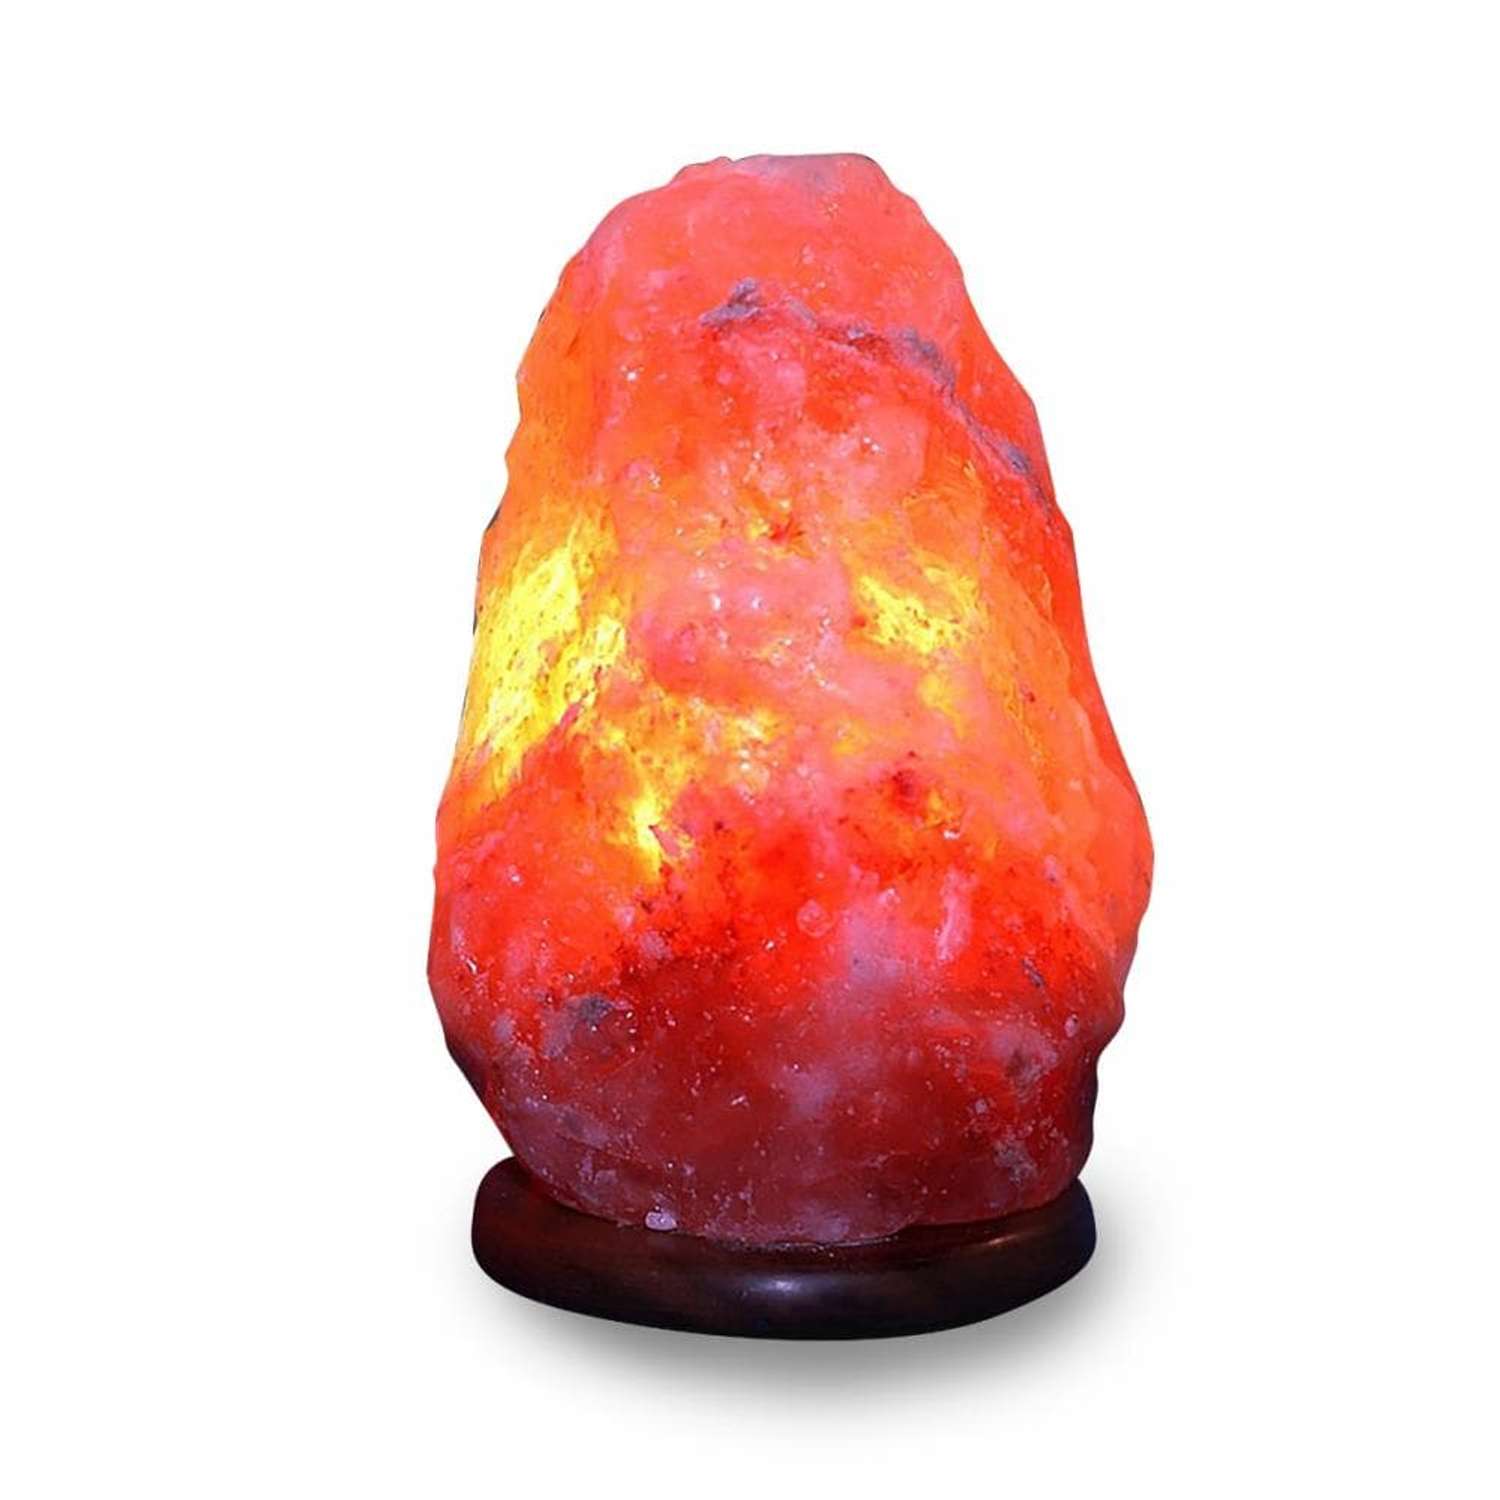 Солевая лампа Wonder Life скала 4-6кг Гималайская соль красного оттенка с диммером - фото 1